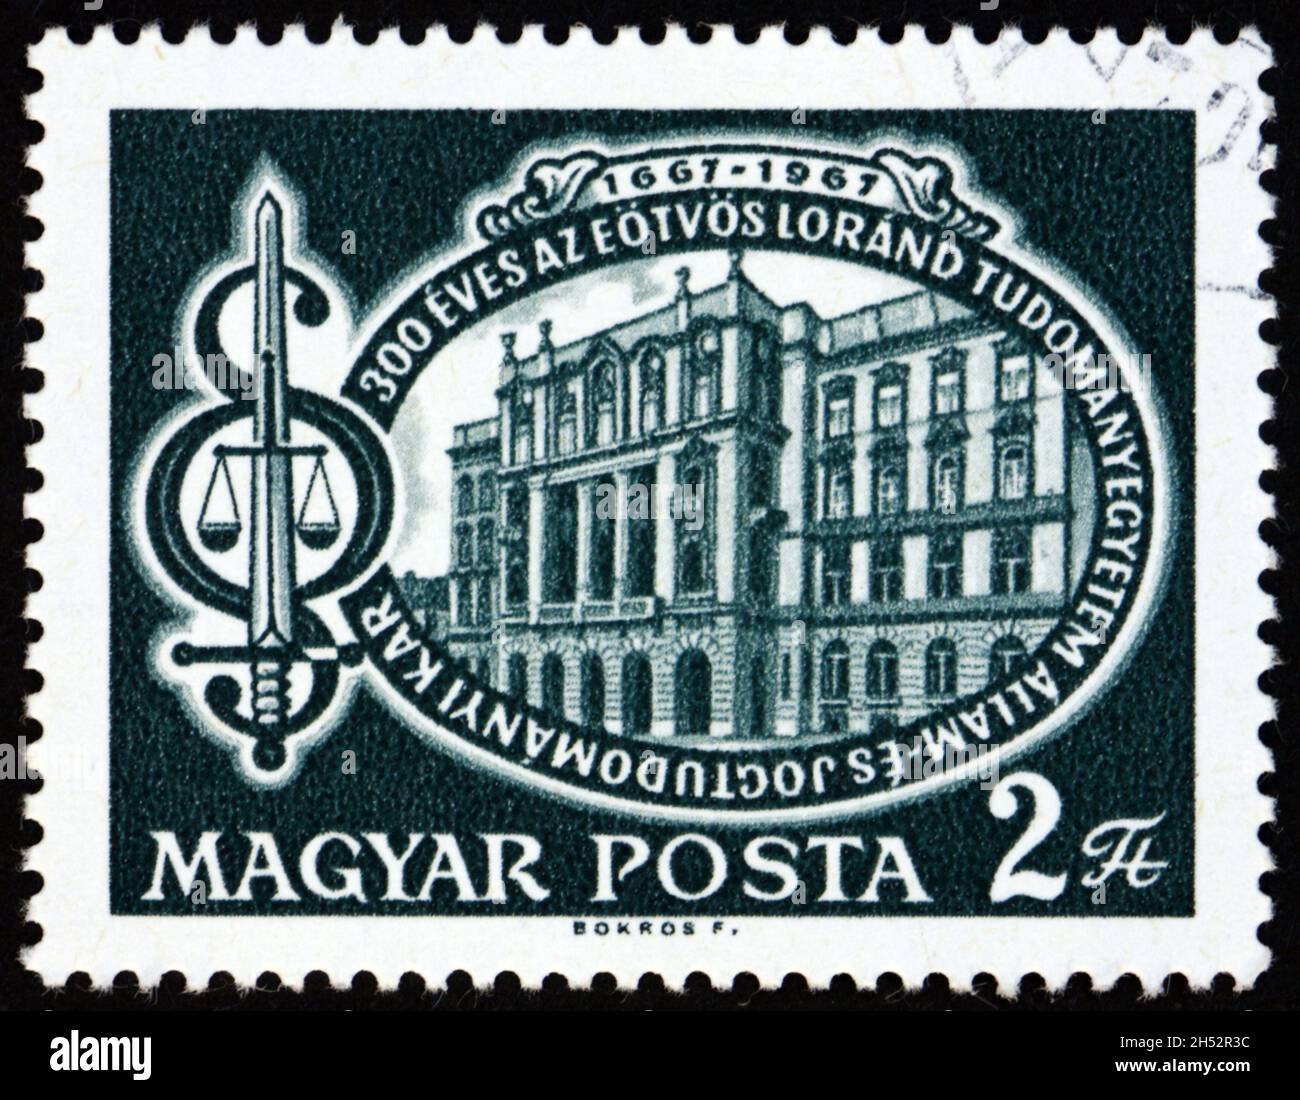 UNGARN - UM 1967: Eine in Ungarn gedruckte Briefmarke zeigt die Universität Eotvos Lorand und Symbole für Recht und Gerechtigkeit, 300 Jahre Universität, Stockfoto